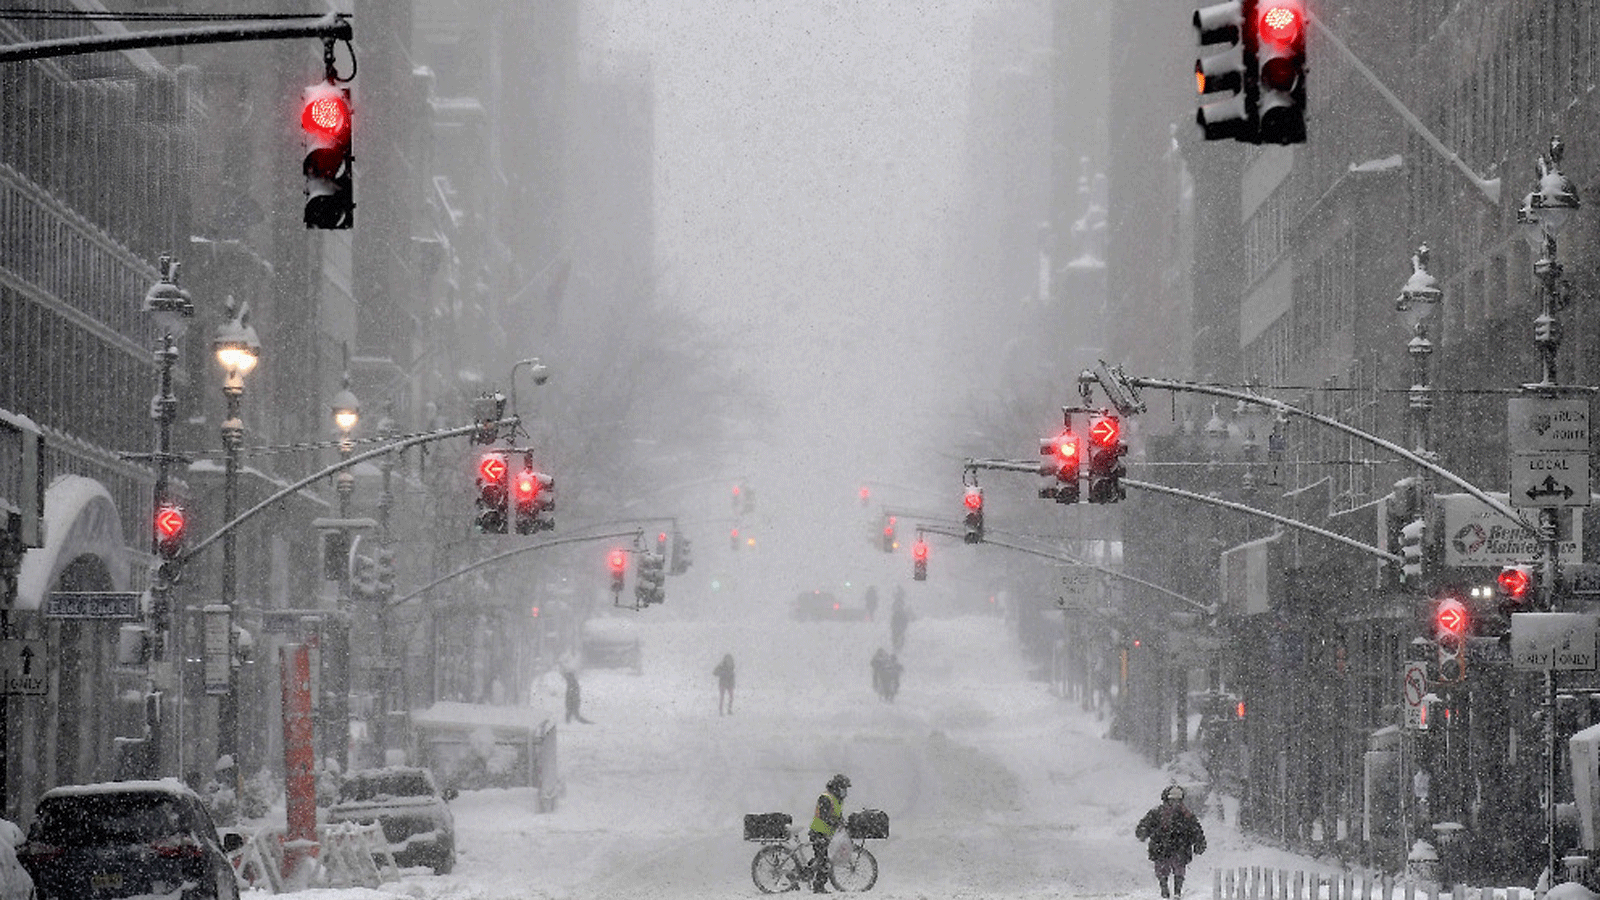 لقطة من العاصفة التي ضربت مدينة نيويورك الأميركية في شباط/ فبراير 2021